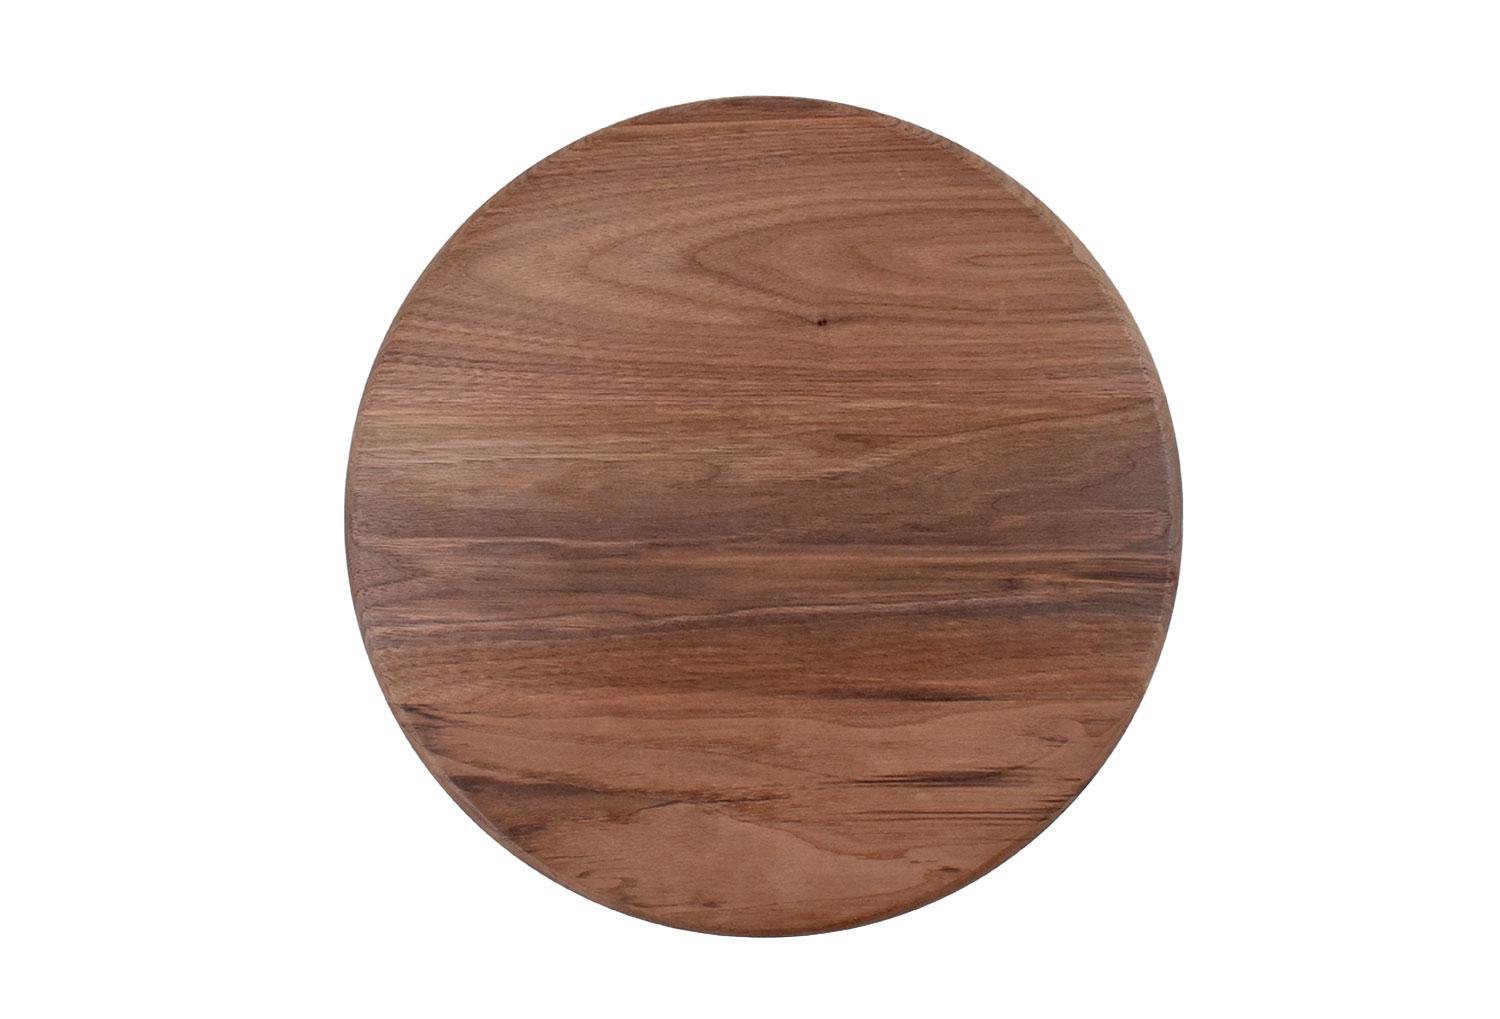 Round 15 inch wood cutting board